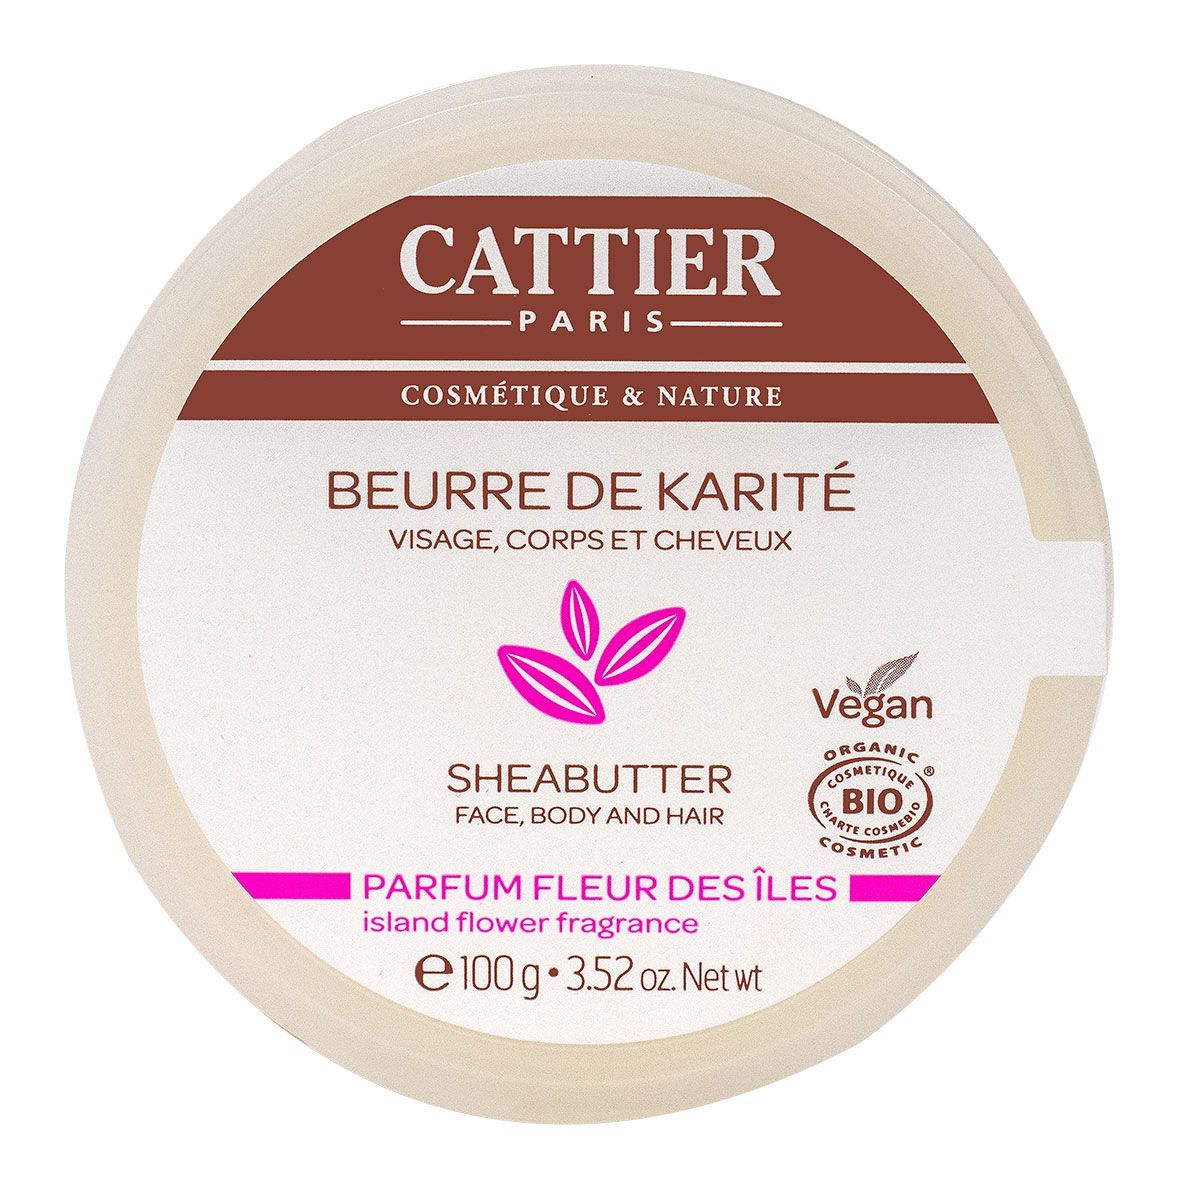 Produit terminé : Beurre de Karité de CATTIER, je rachète ou pas ? – Isa De  cannes